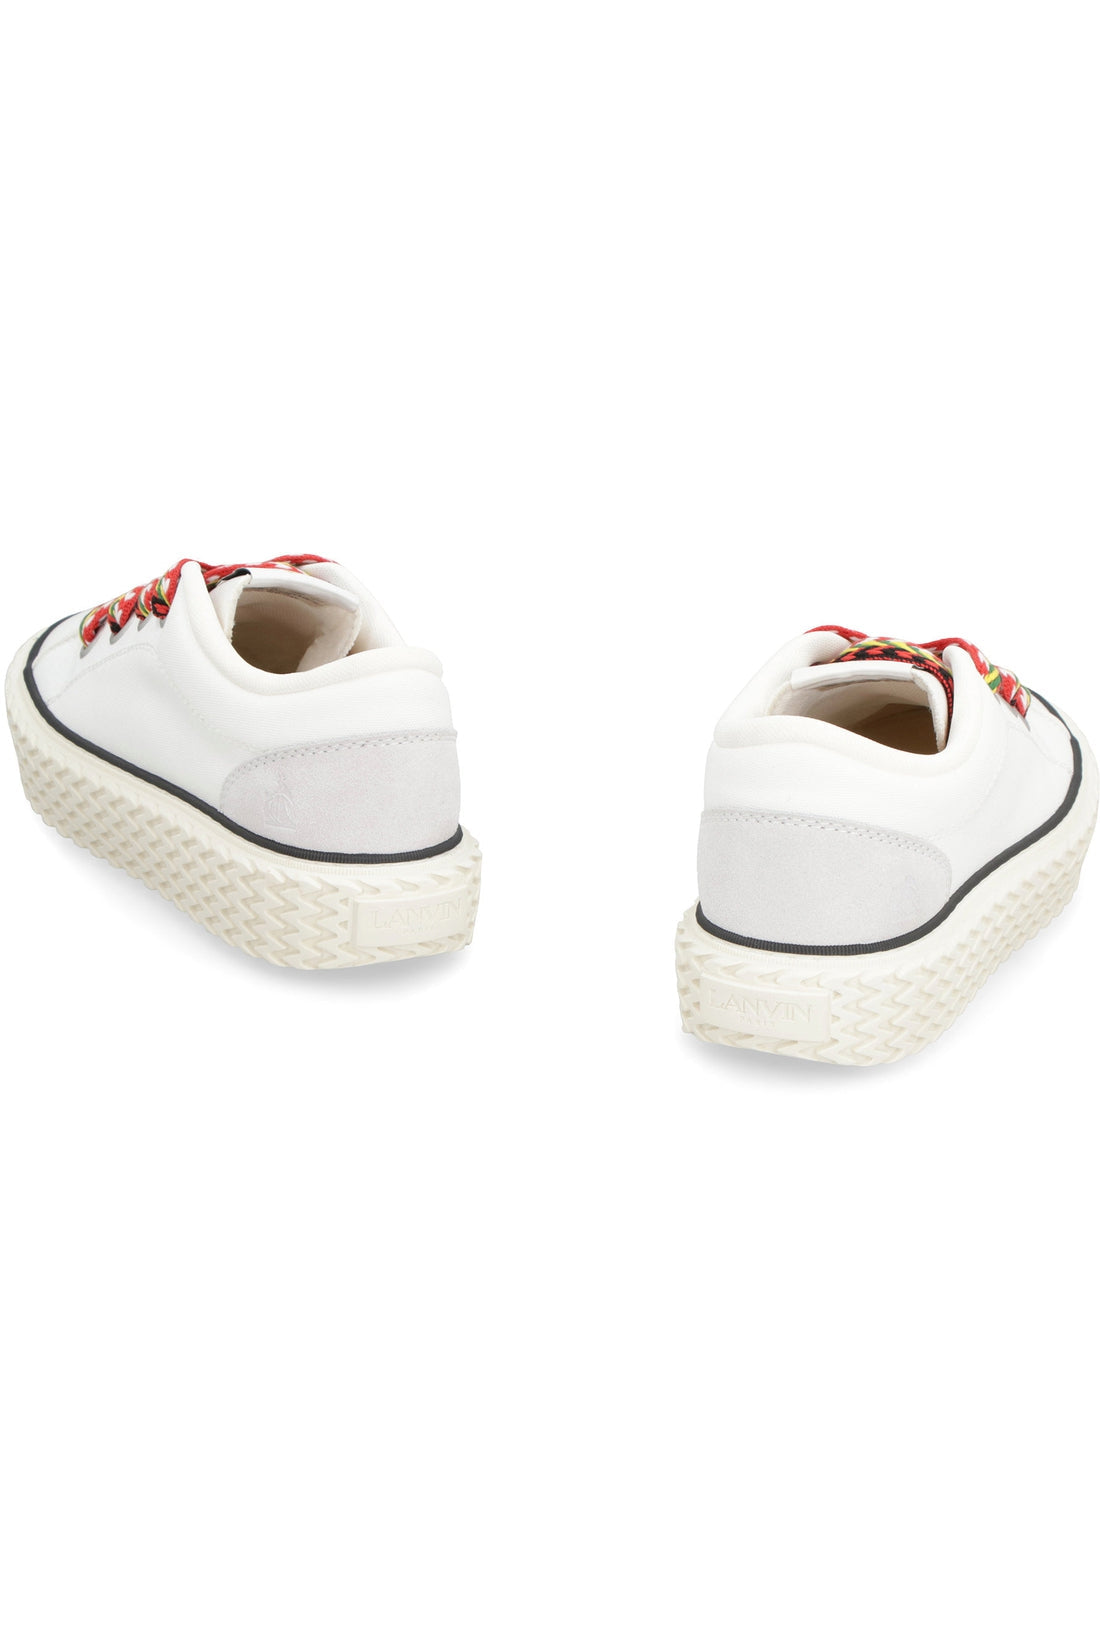 Lanvin-OUTLET-SALE-Curbies canvas sneakers-ARCHIVIST